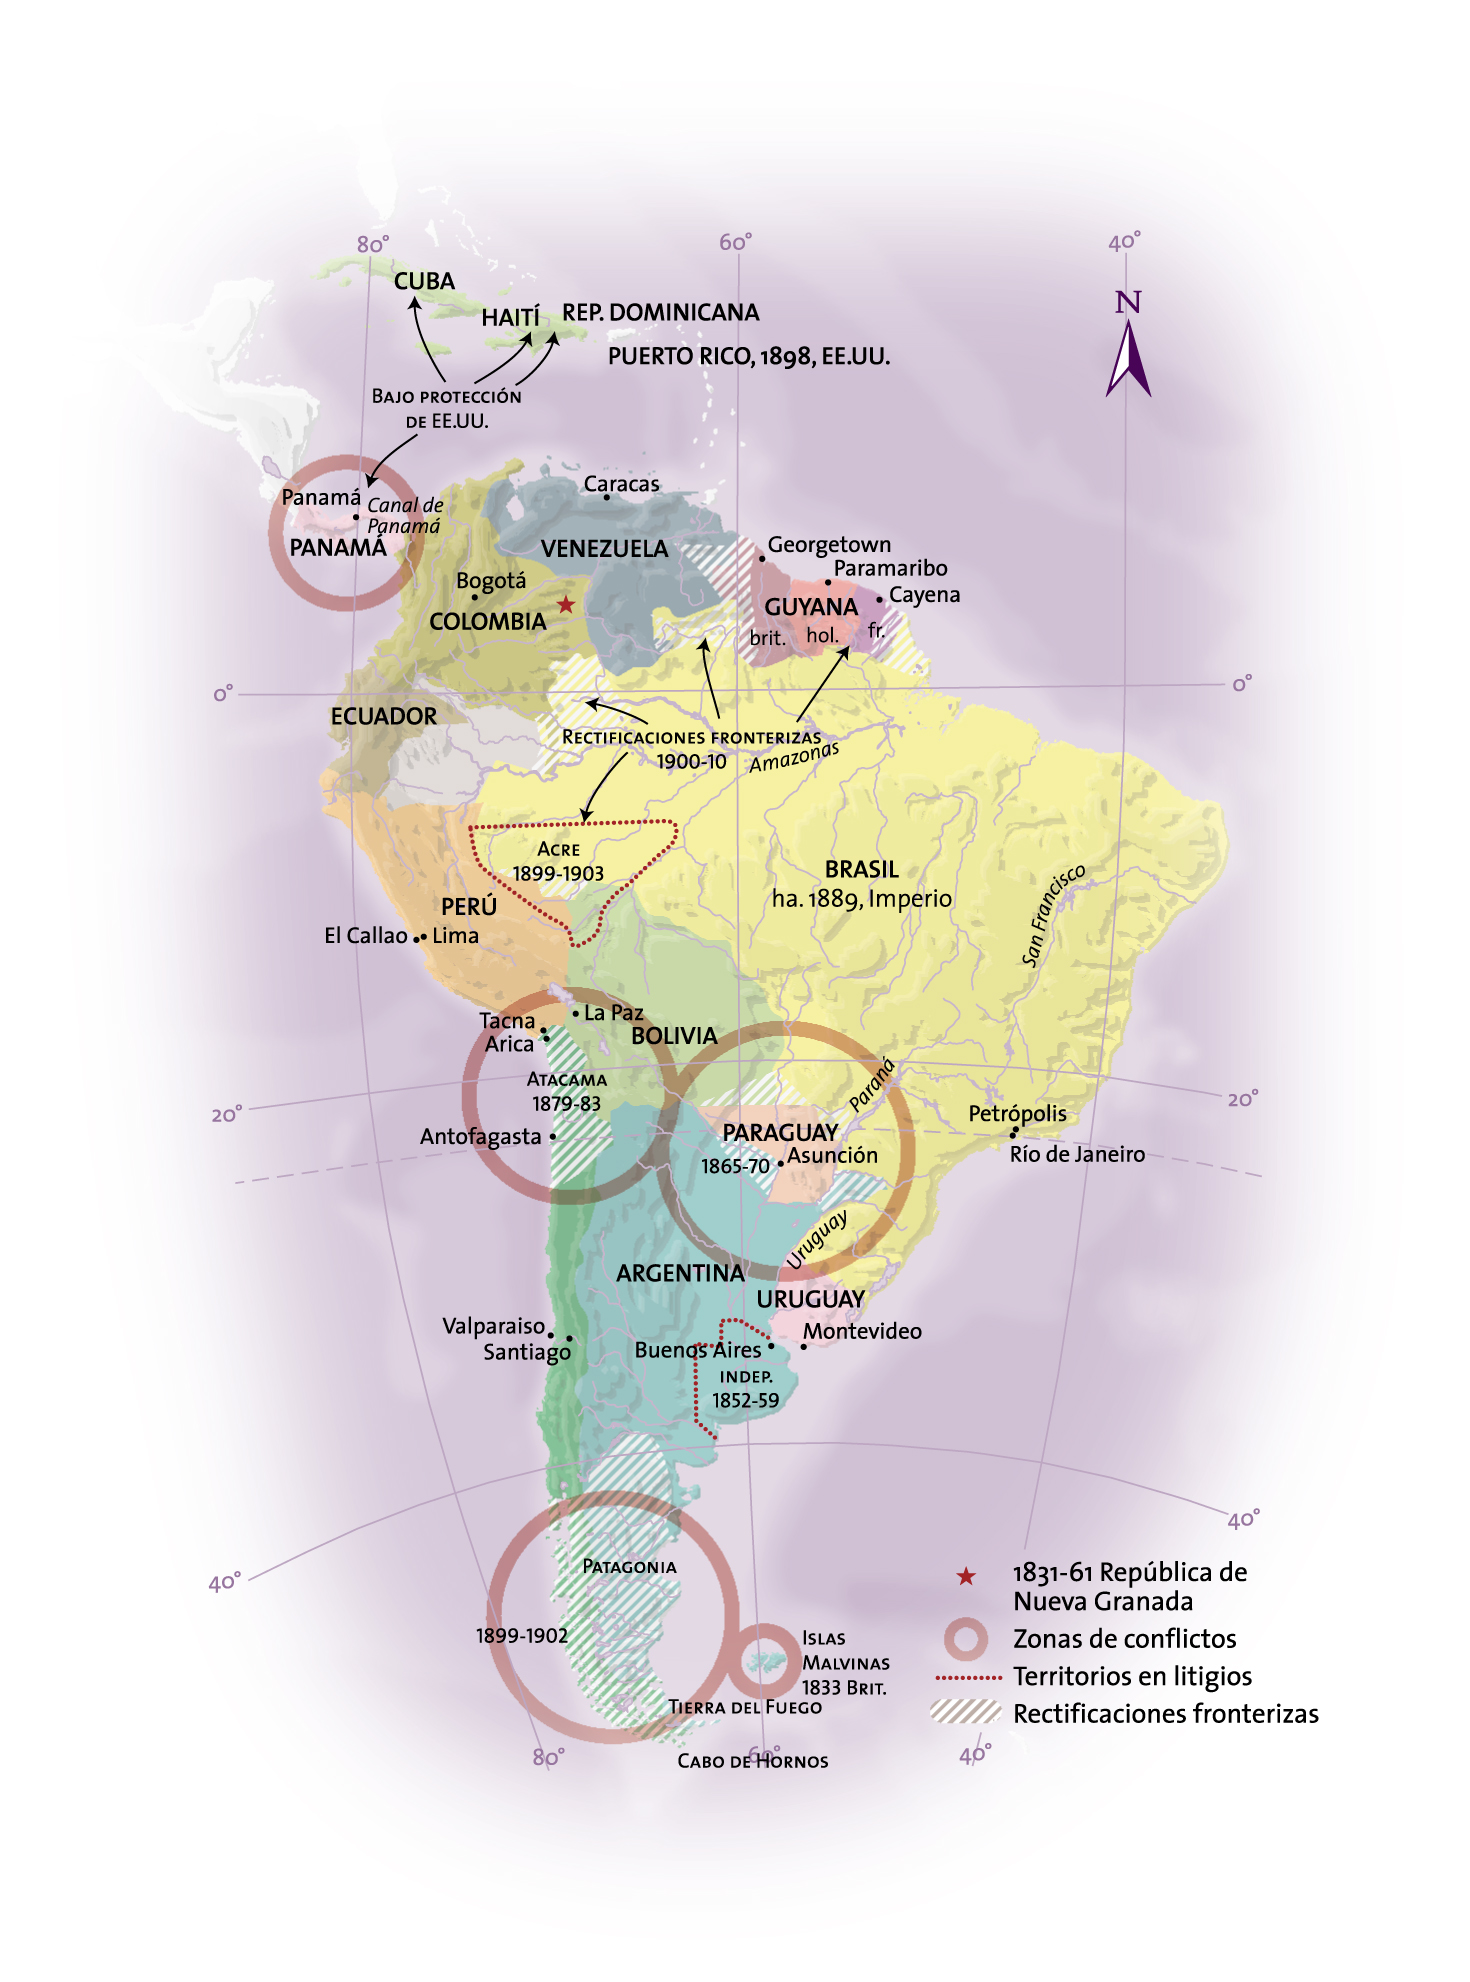 Formación de nuevos estados en América Latina